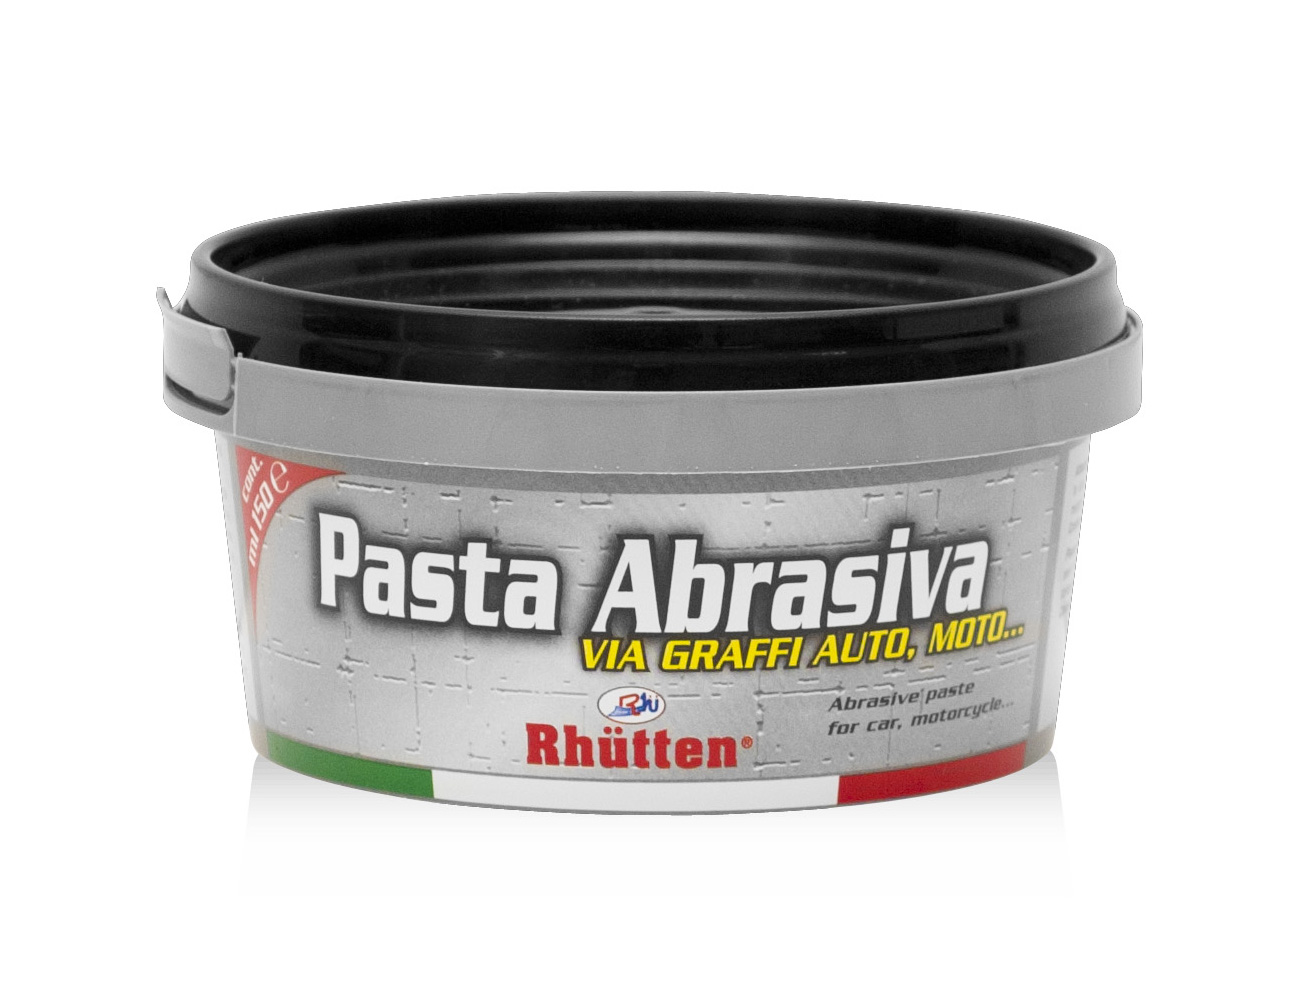 Pasta abrasiva carrozzeria 150ml - CURA E PULIZIA AUTO - RHUTTEN -  8016565001712